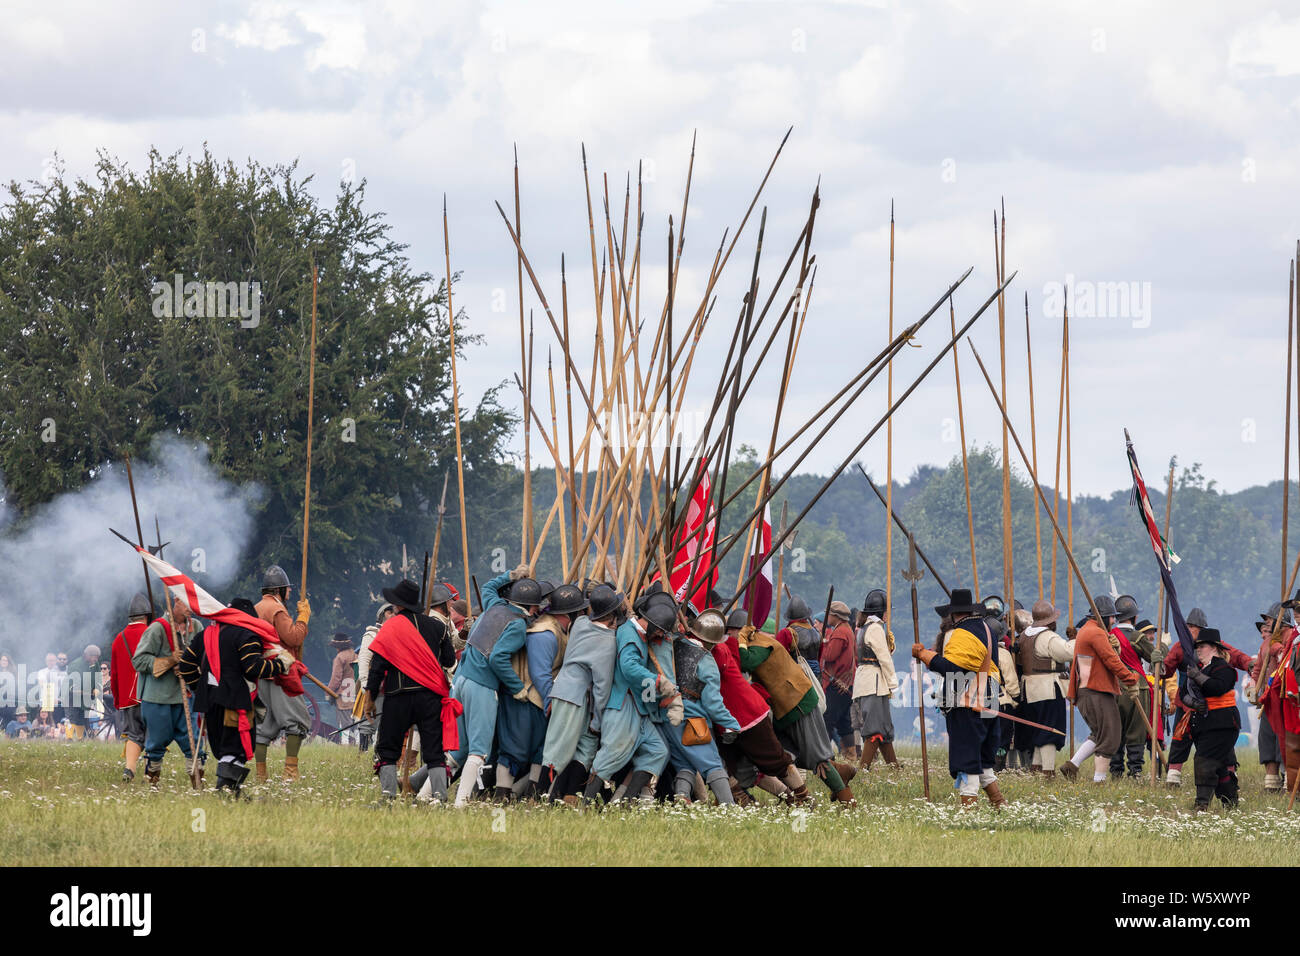 English civil War Society - la bataille de Marlborough réédiction sur Marlborough Common, Wiltshire, Angleterre, Royaume-Uni Banque D'Images